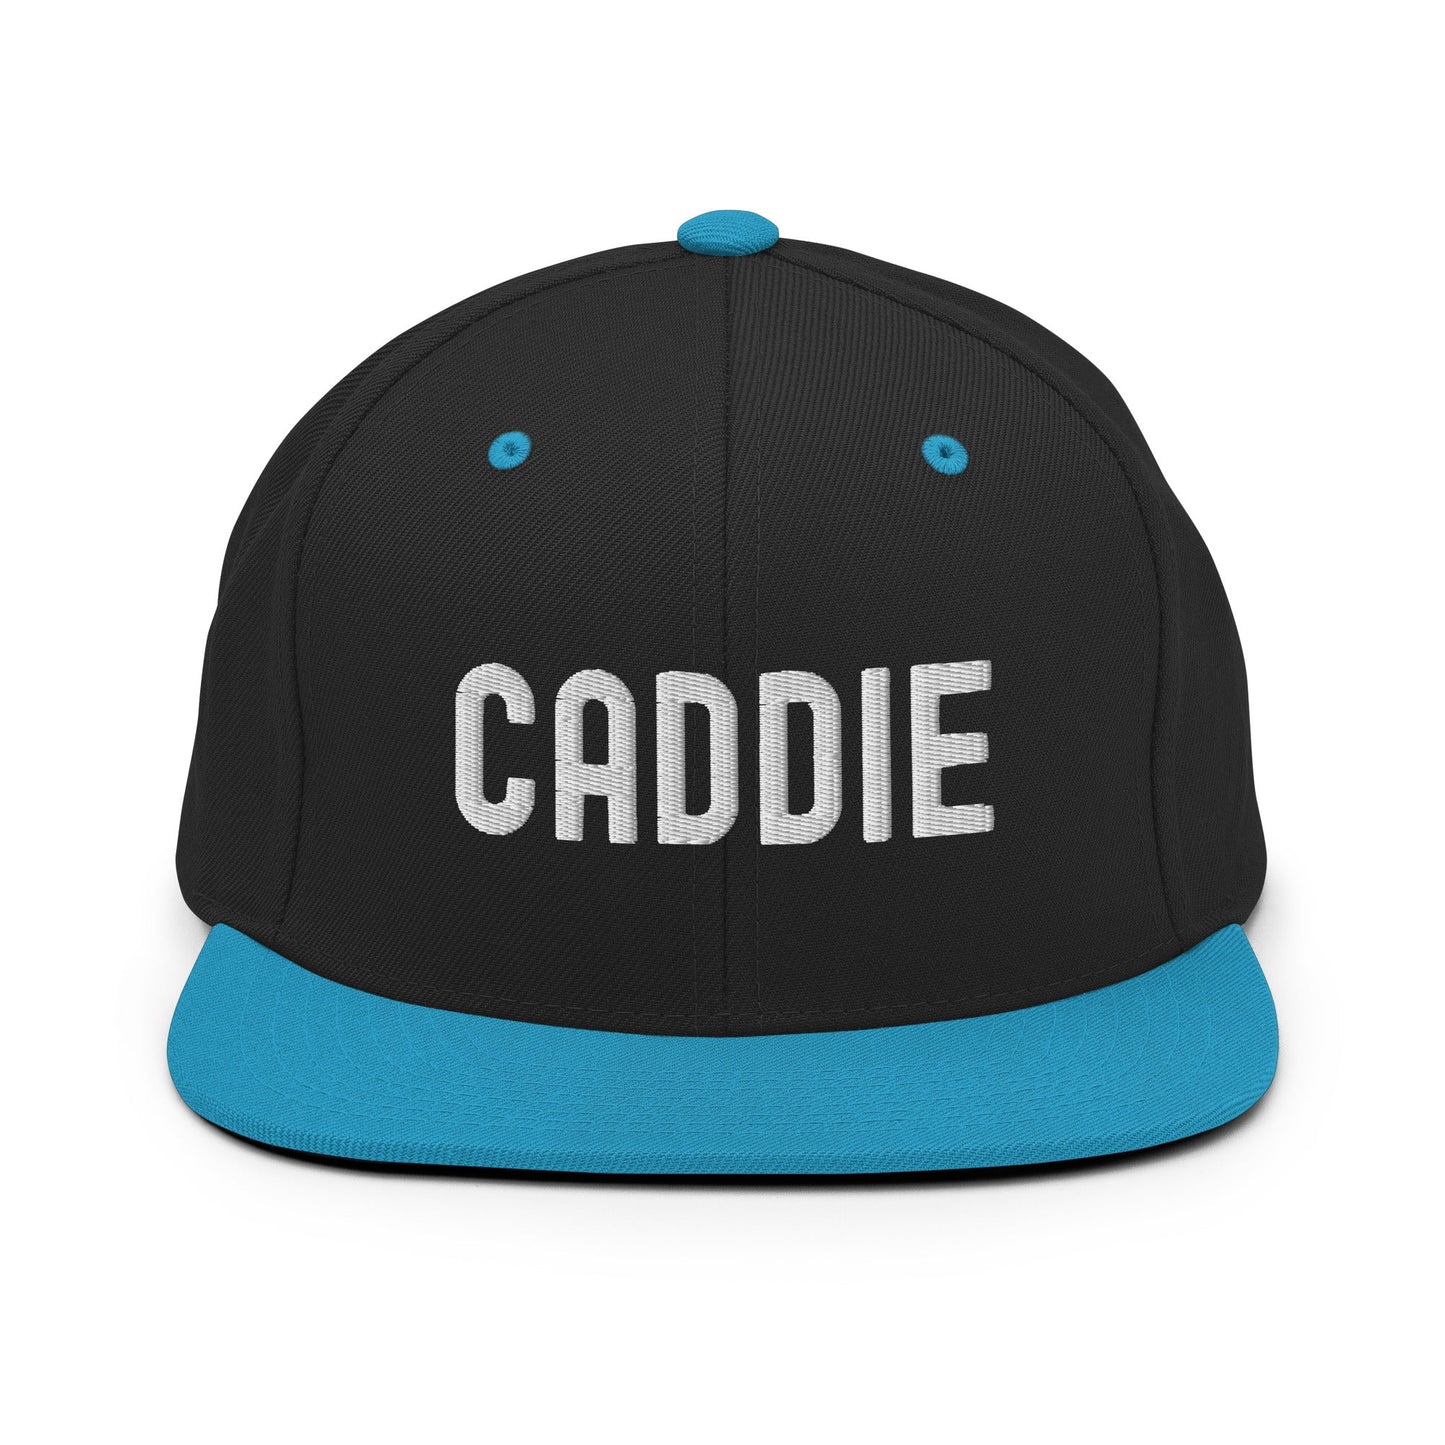 Funny Golfer Gifts  Snapback Hat Black/ Teal Caddie Snapback Hat